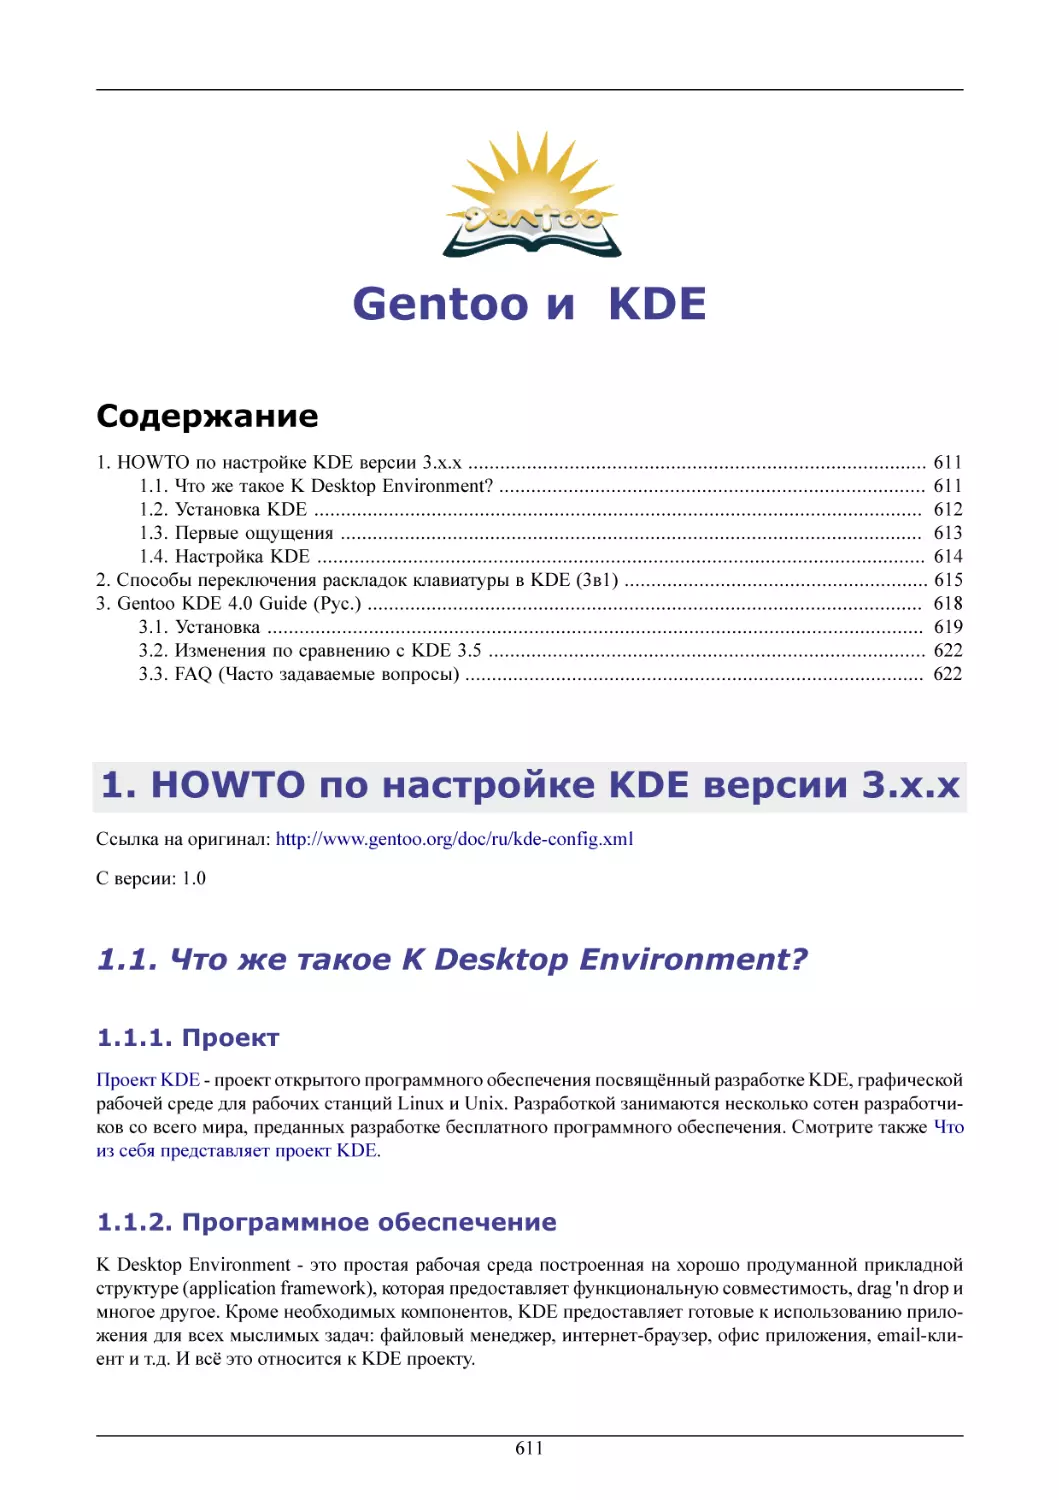 Gentoo и  KDE
HOWTO по настройке KDE версии 3.x.x
Что же такое K Desktop Environment?
Проект
Программное обеспечение